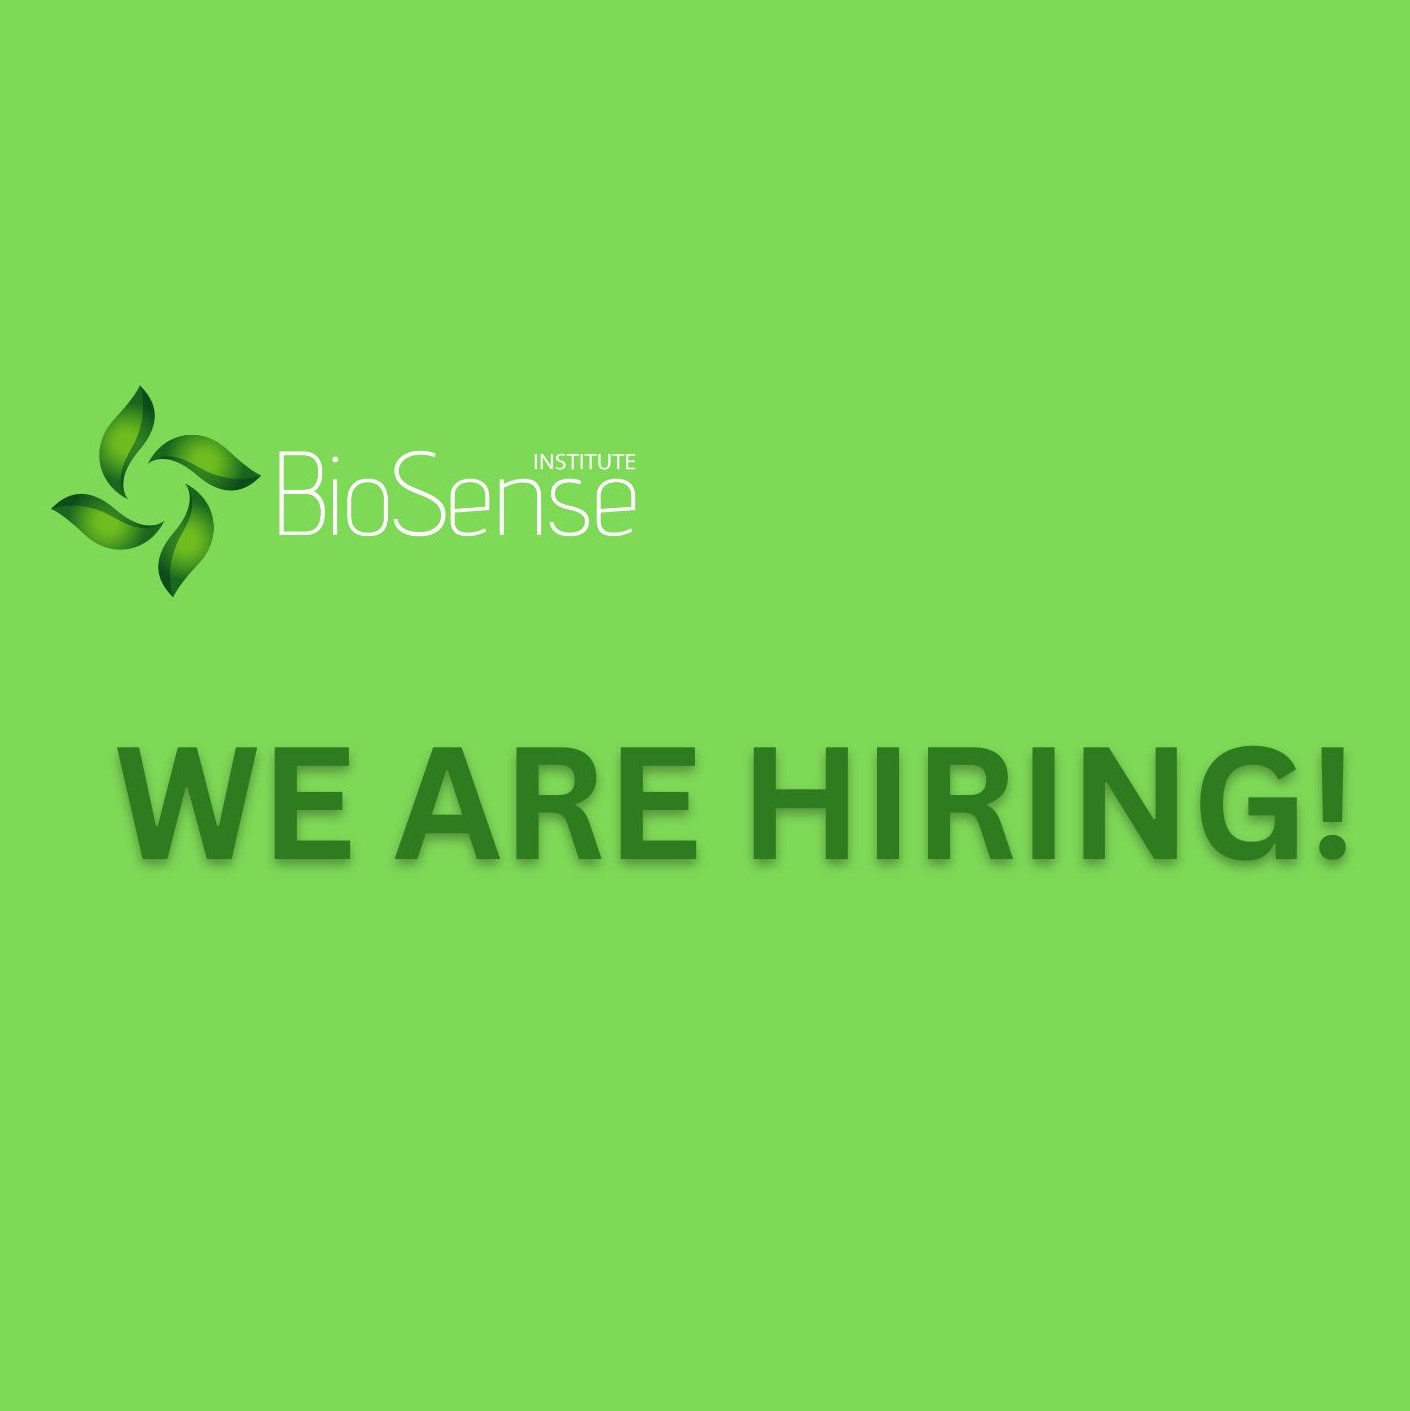 BioSense is hiring